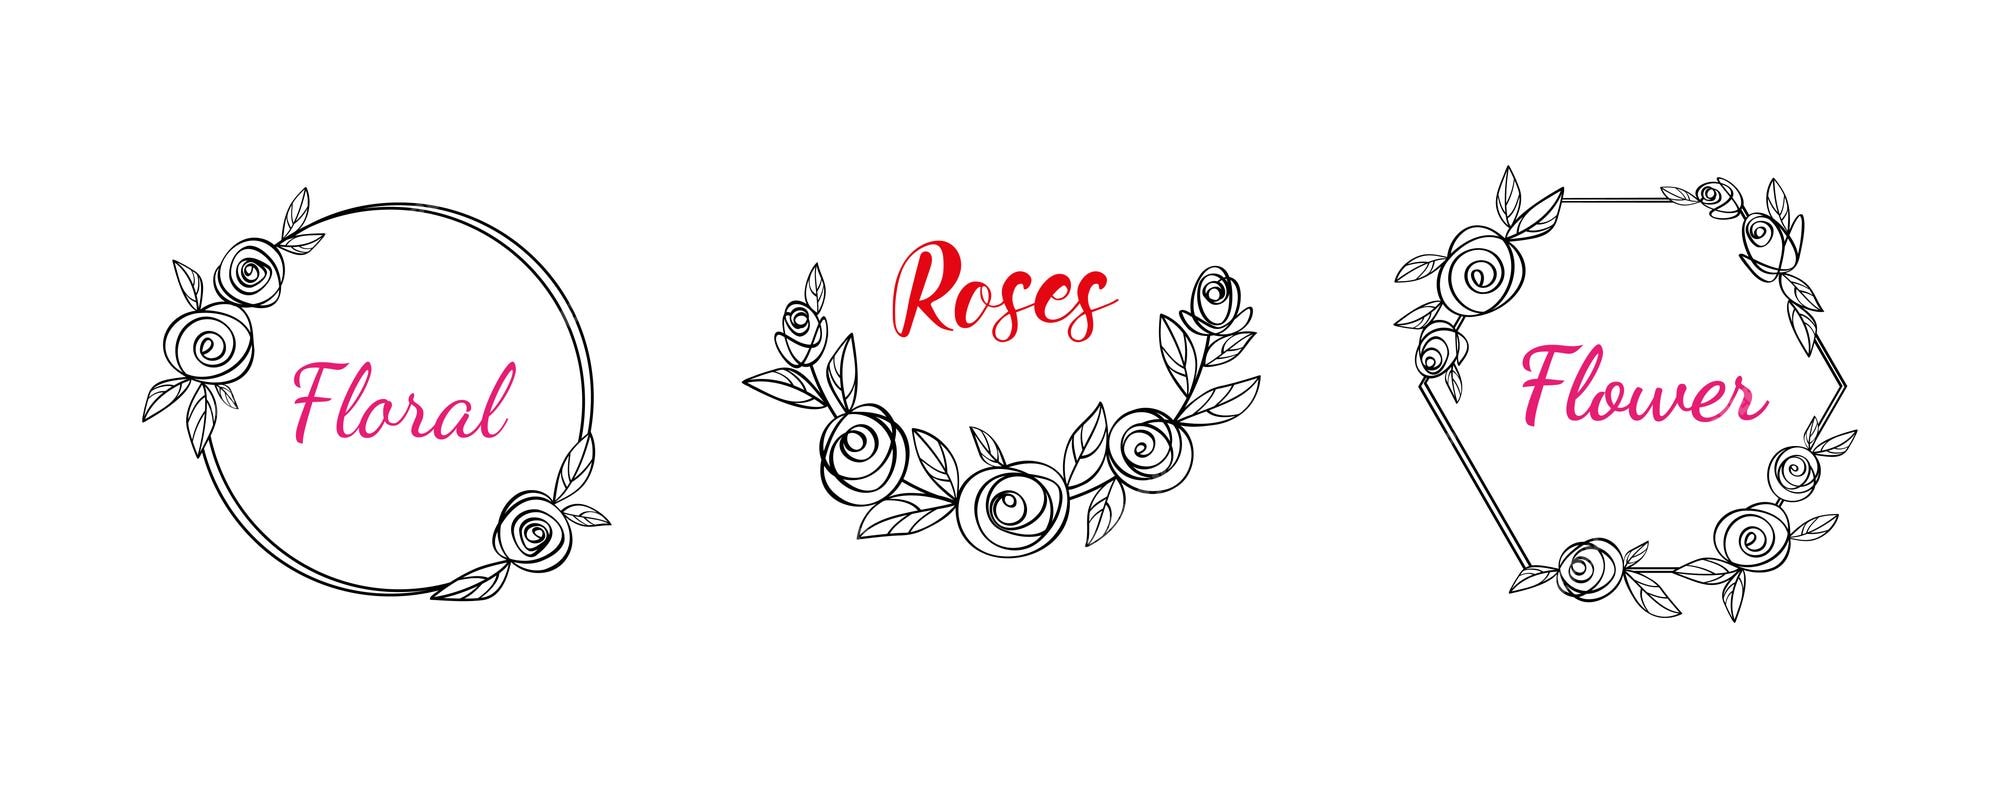 Rose Flower And Leaves, Monogram Frame Free Svg File - SVG Heart